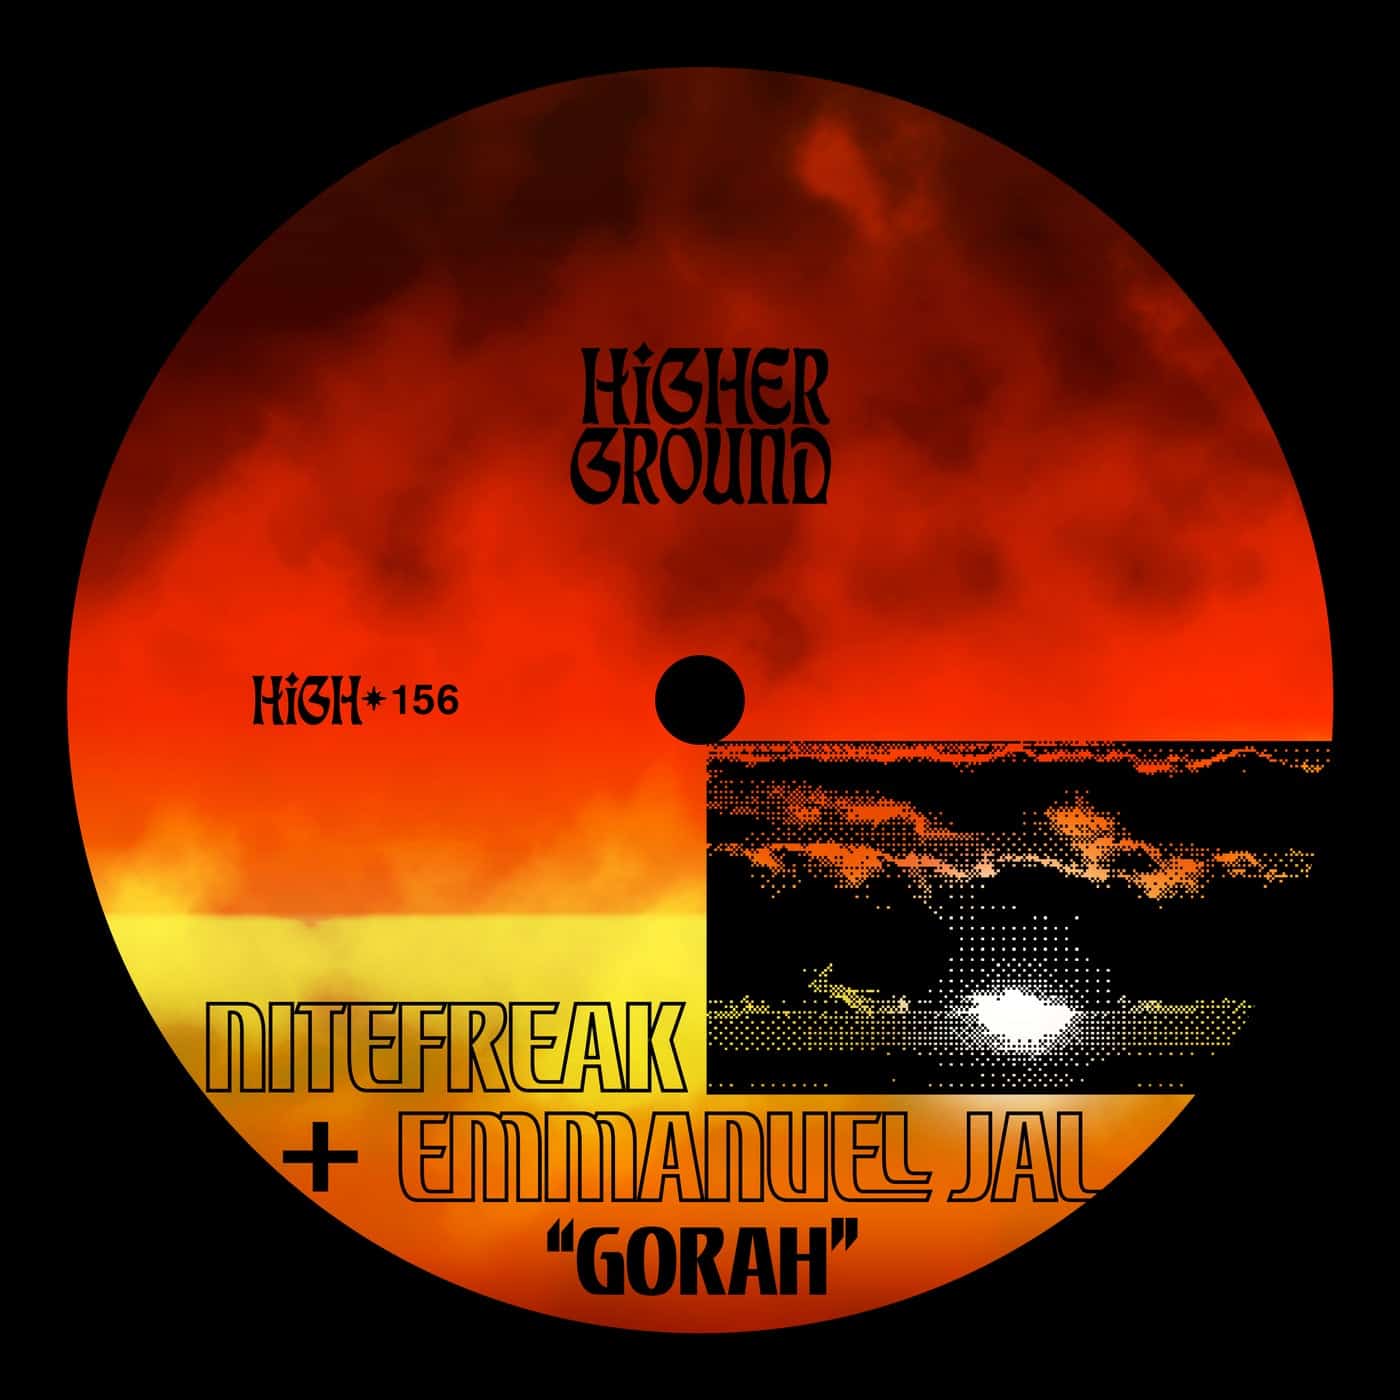 image cover: Emmanuel Jal, Nitefreak - Gorah (Extended) on Higher Ground